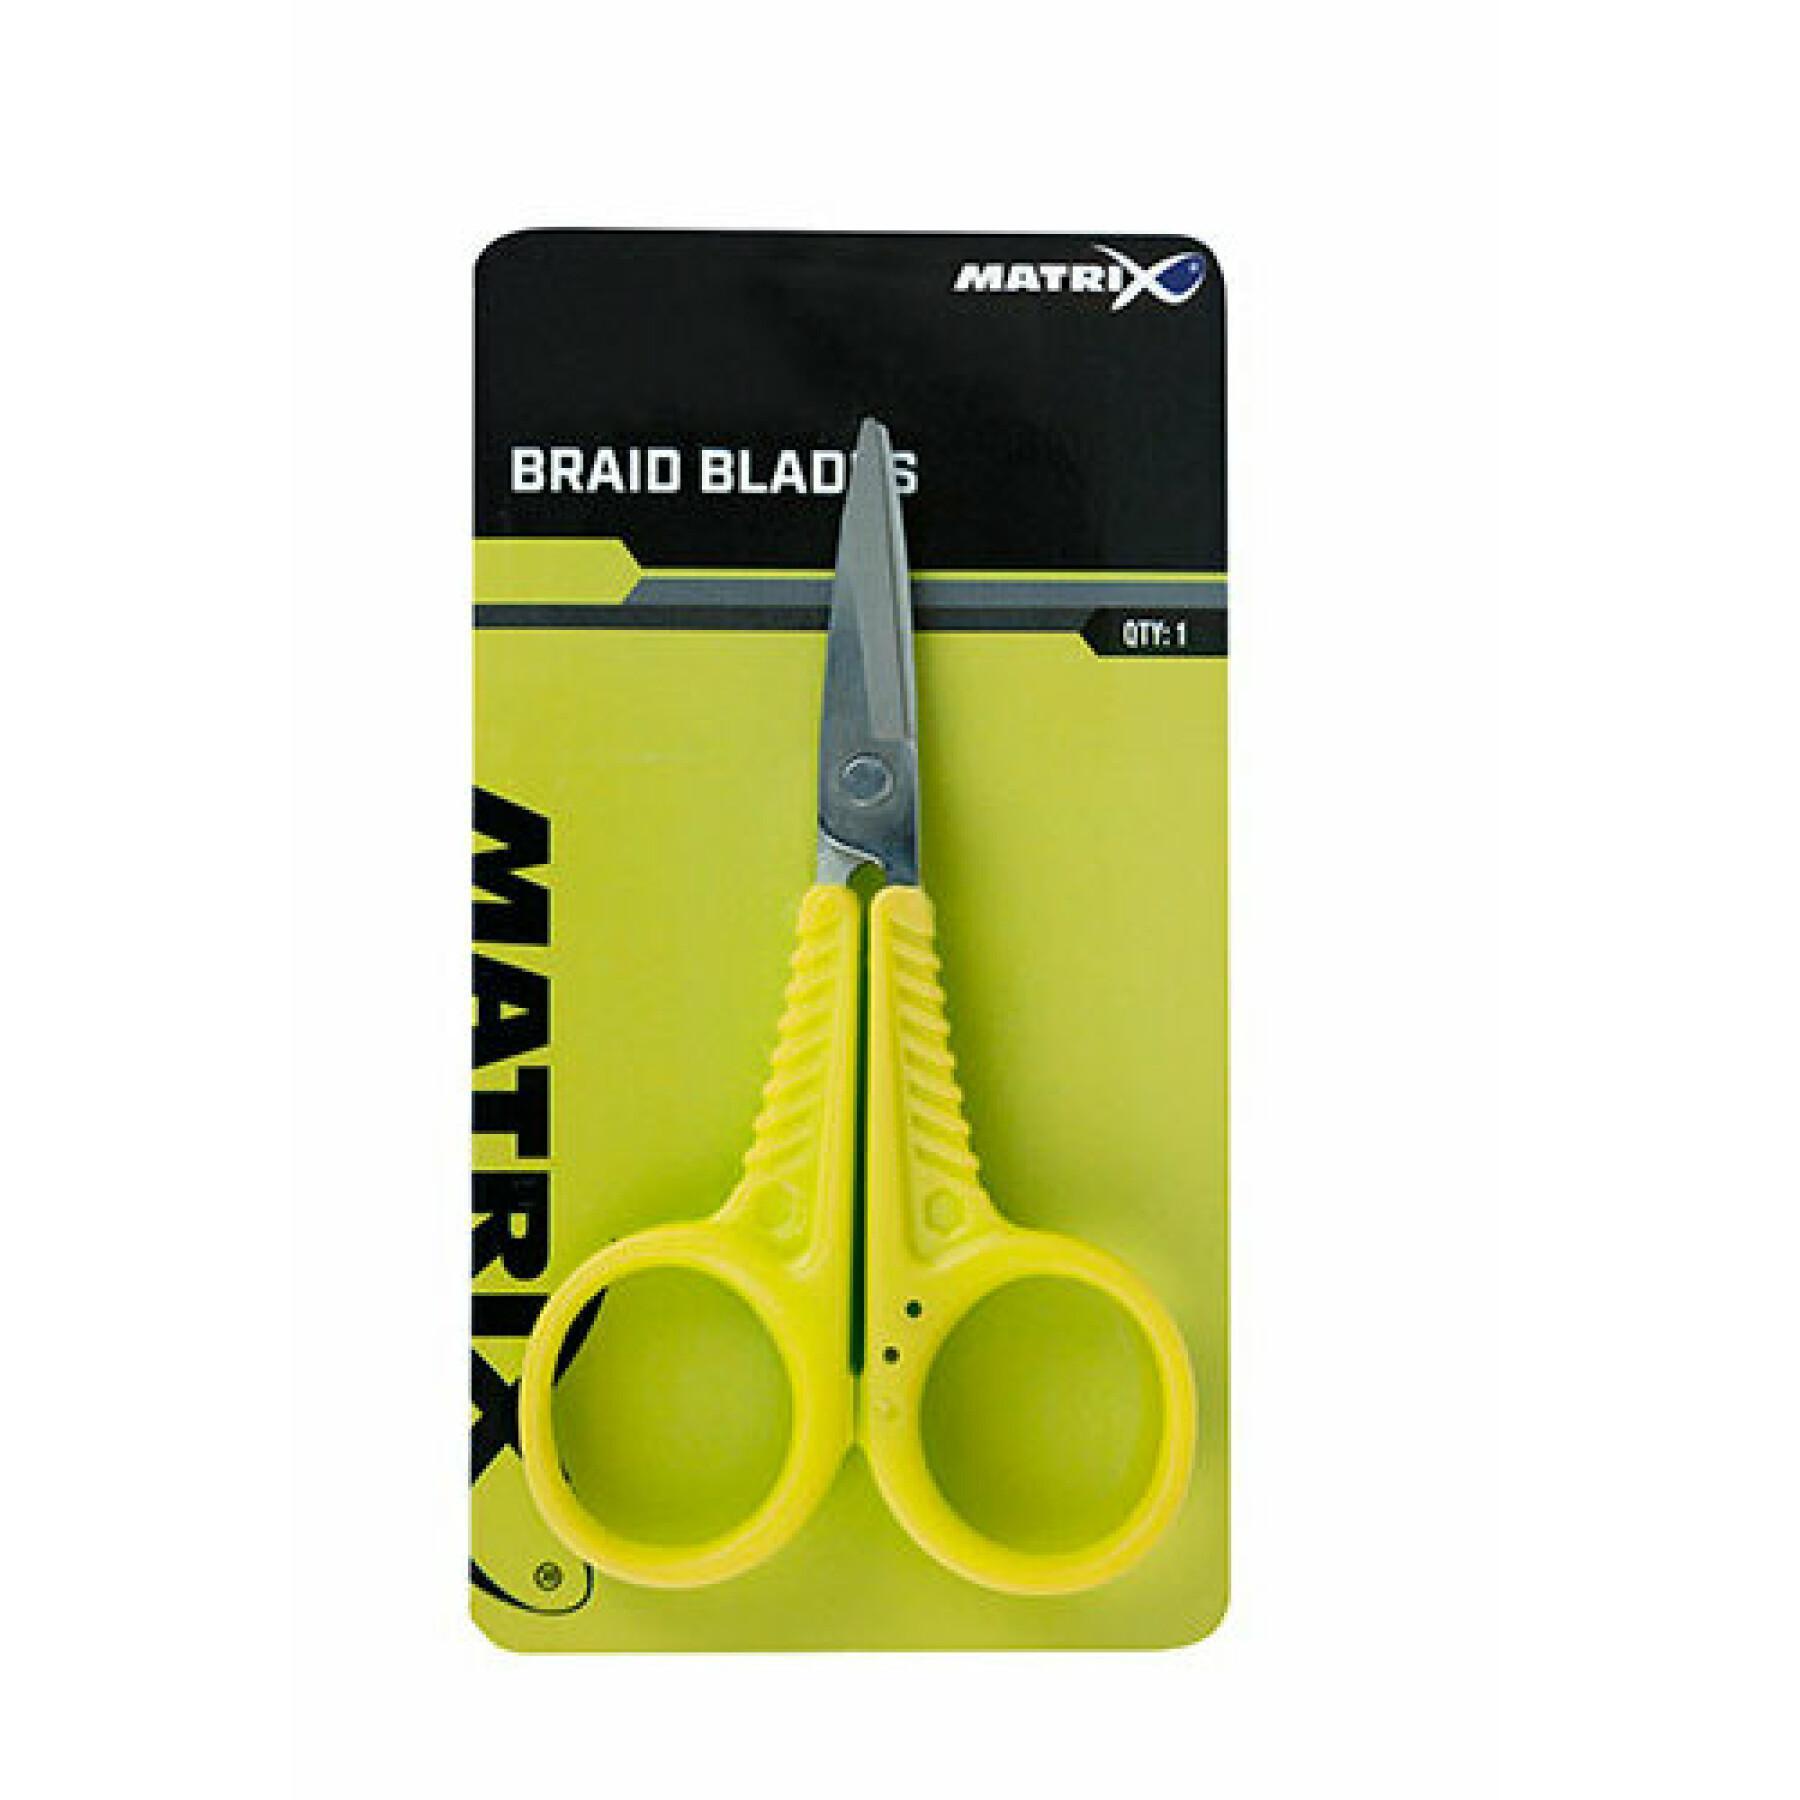 Braid scissors Matrix